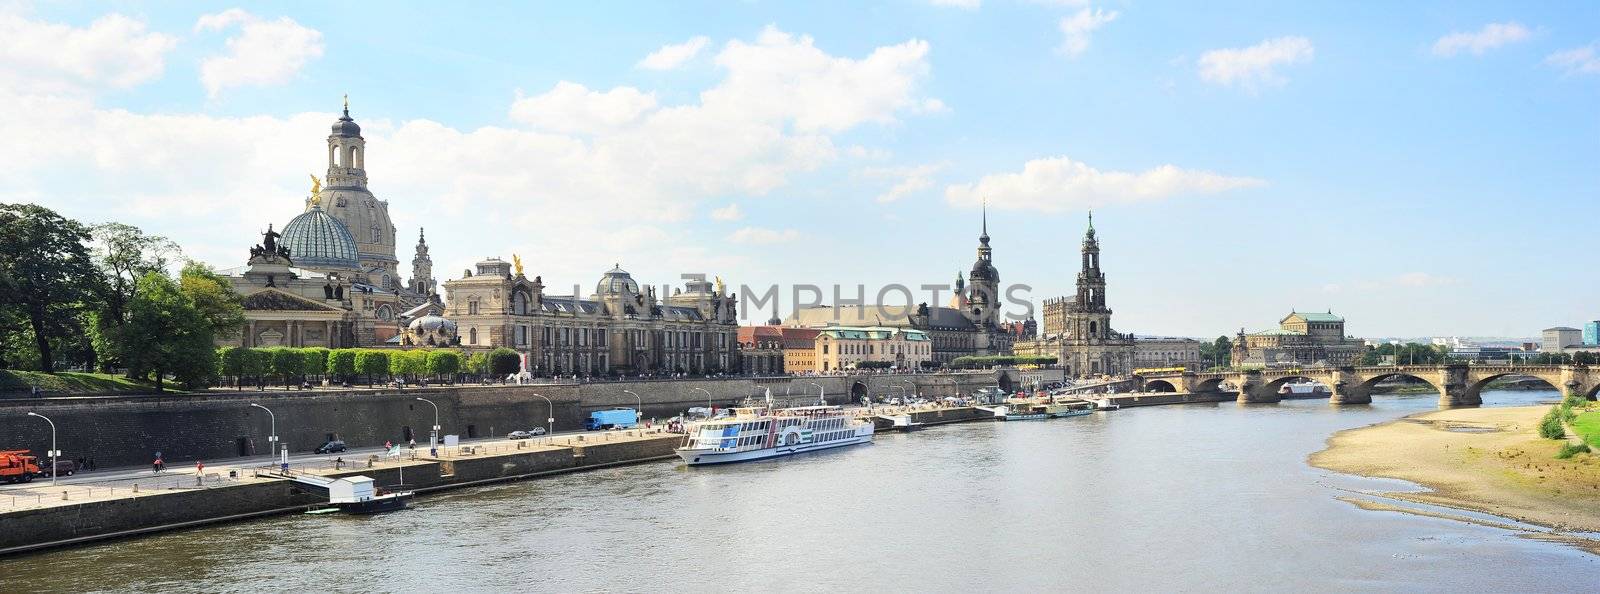 Dresden panorama by joyfull